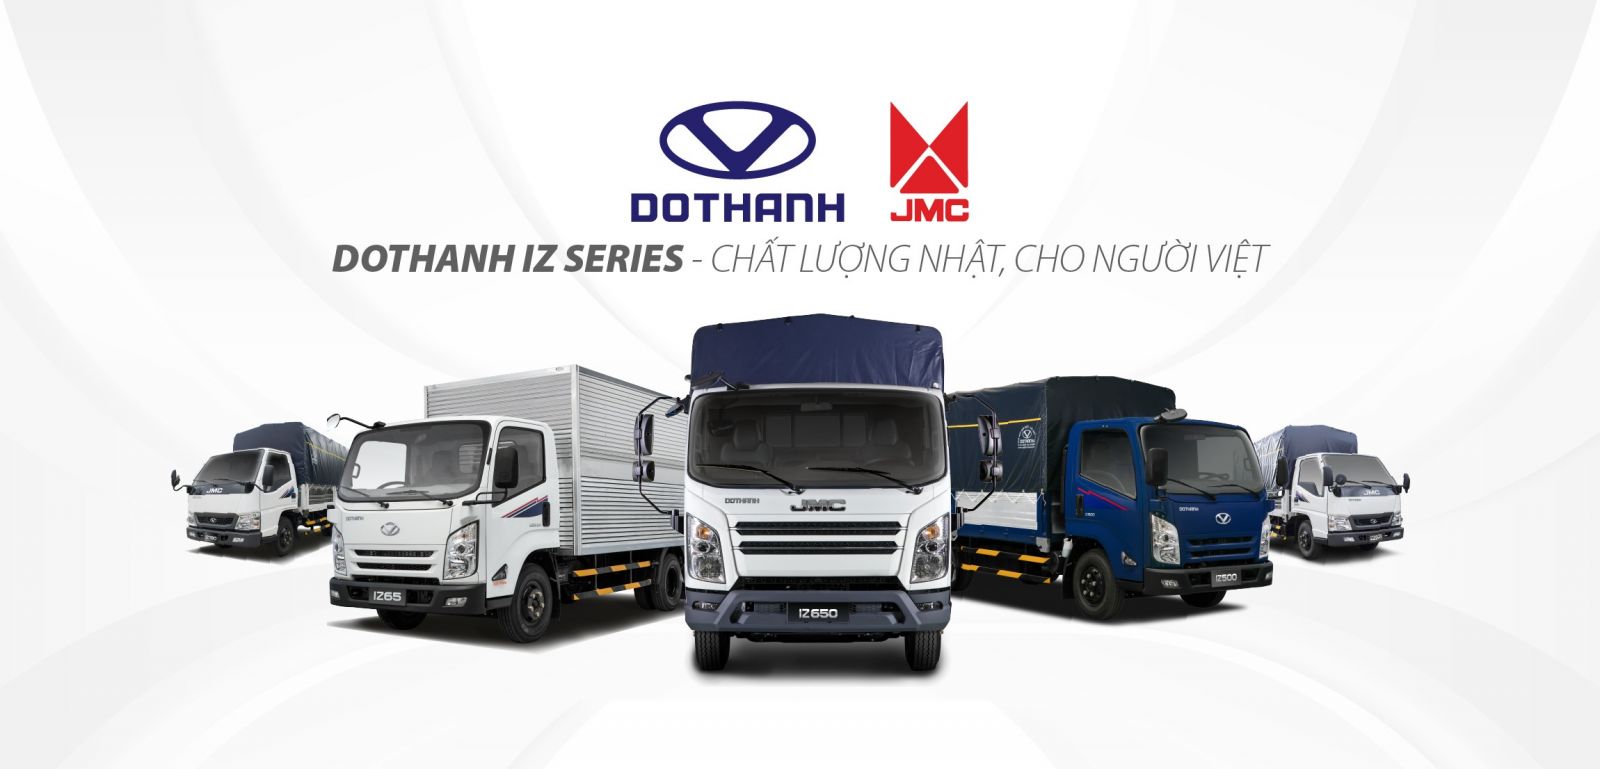 DoThanh Auto tổ chức sự kiện tri ân khách hàng doanh nghiệp miền bắc xe tải DOTHANH IZ SERIES: “Chất lượng Nhật, cho người Việt”